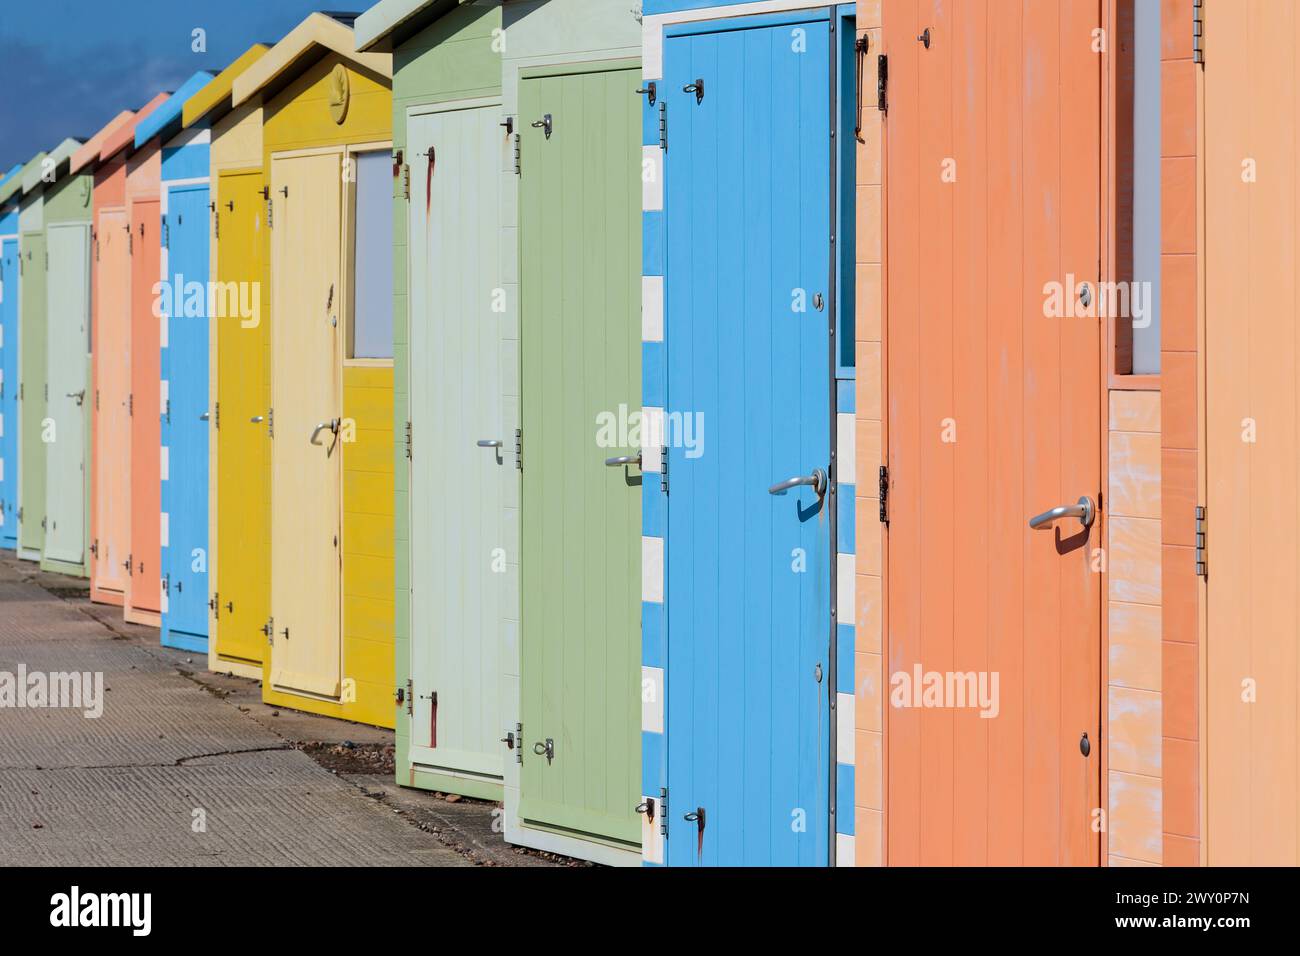 Cabanes de plage à seaford East Sussex UK rangée multicolore de cabanes près de la plage dans des couleurs pastel alternées au printemps par une journée froide et venteuse Banque D'Images